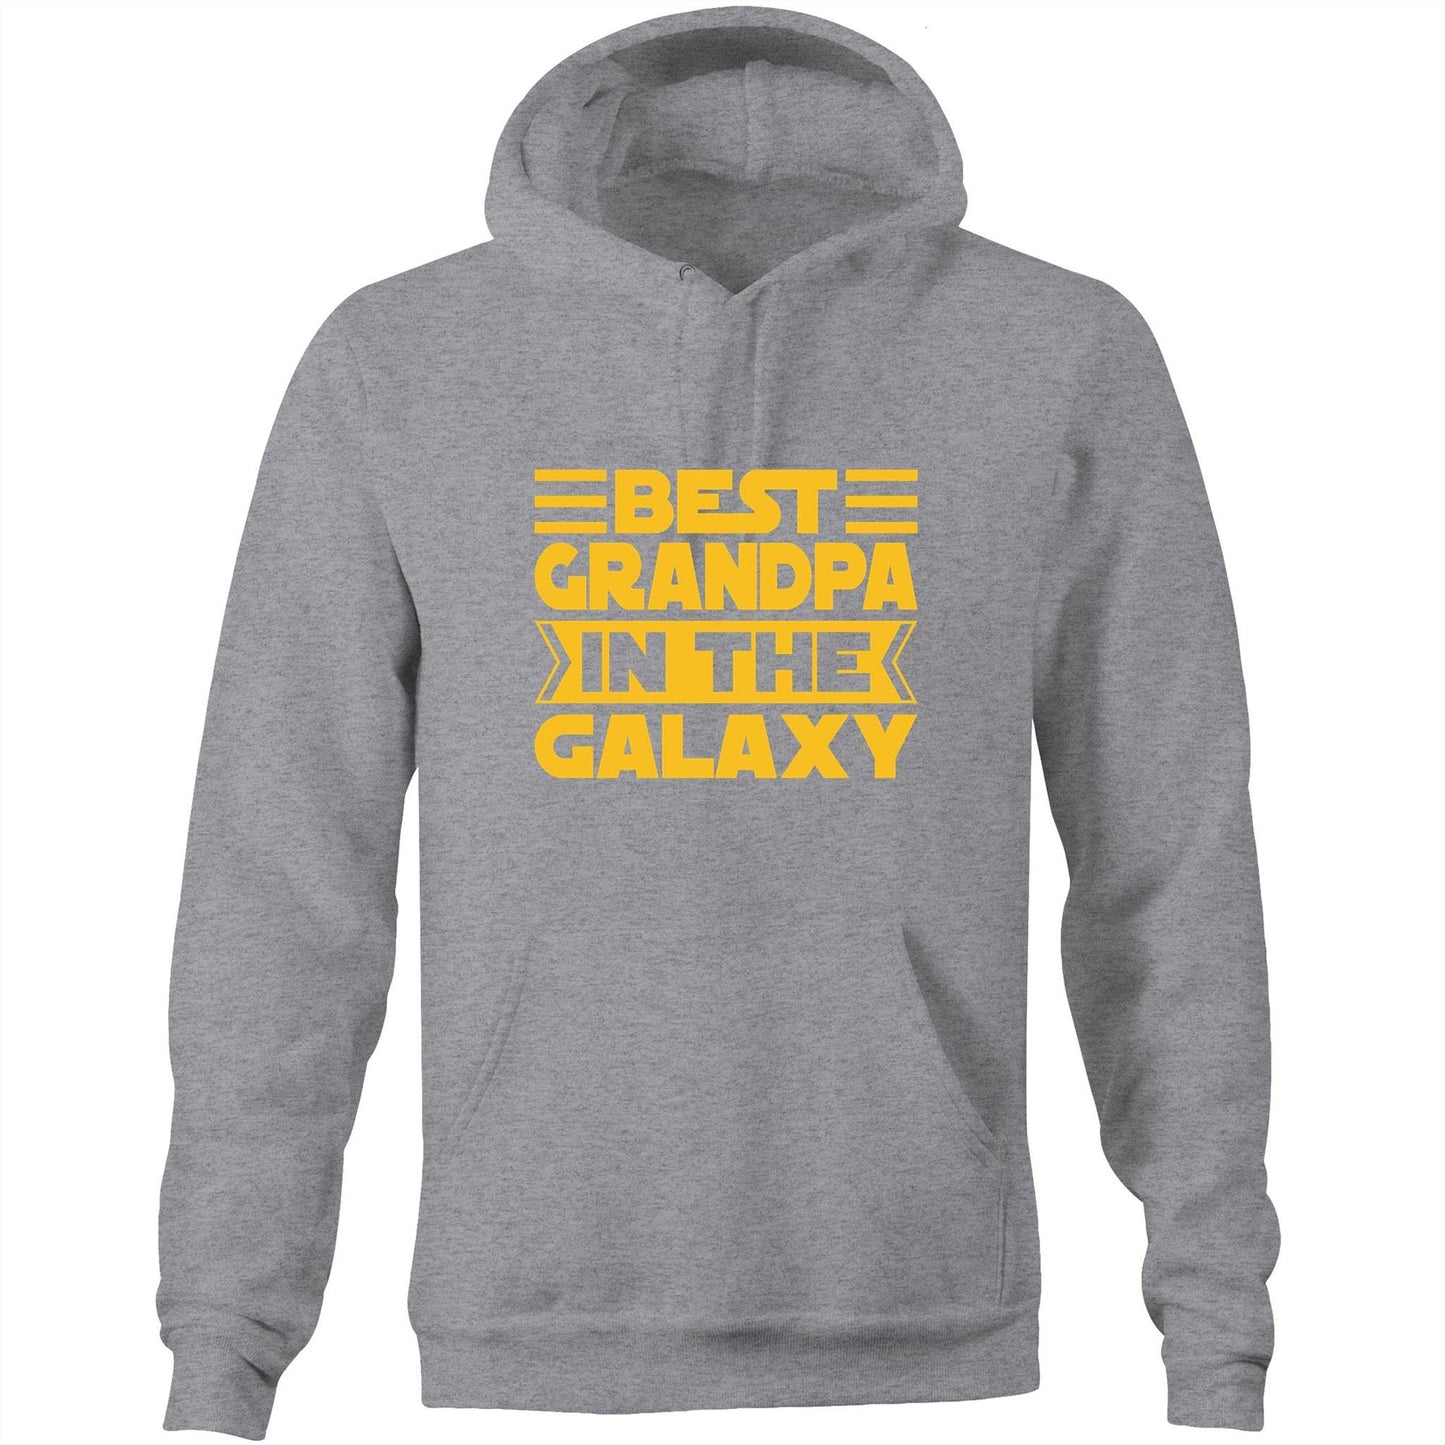 Best Grandpa In The Galaxy - Pocket Hoodie Sweatshirt Grey Marle Hoodie Dad